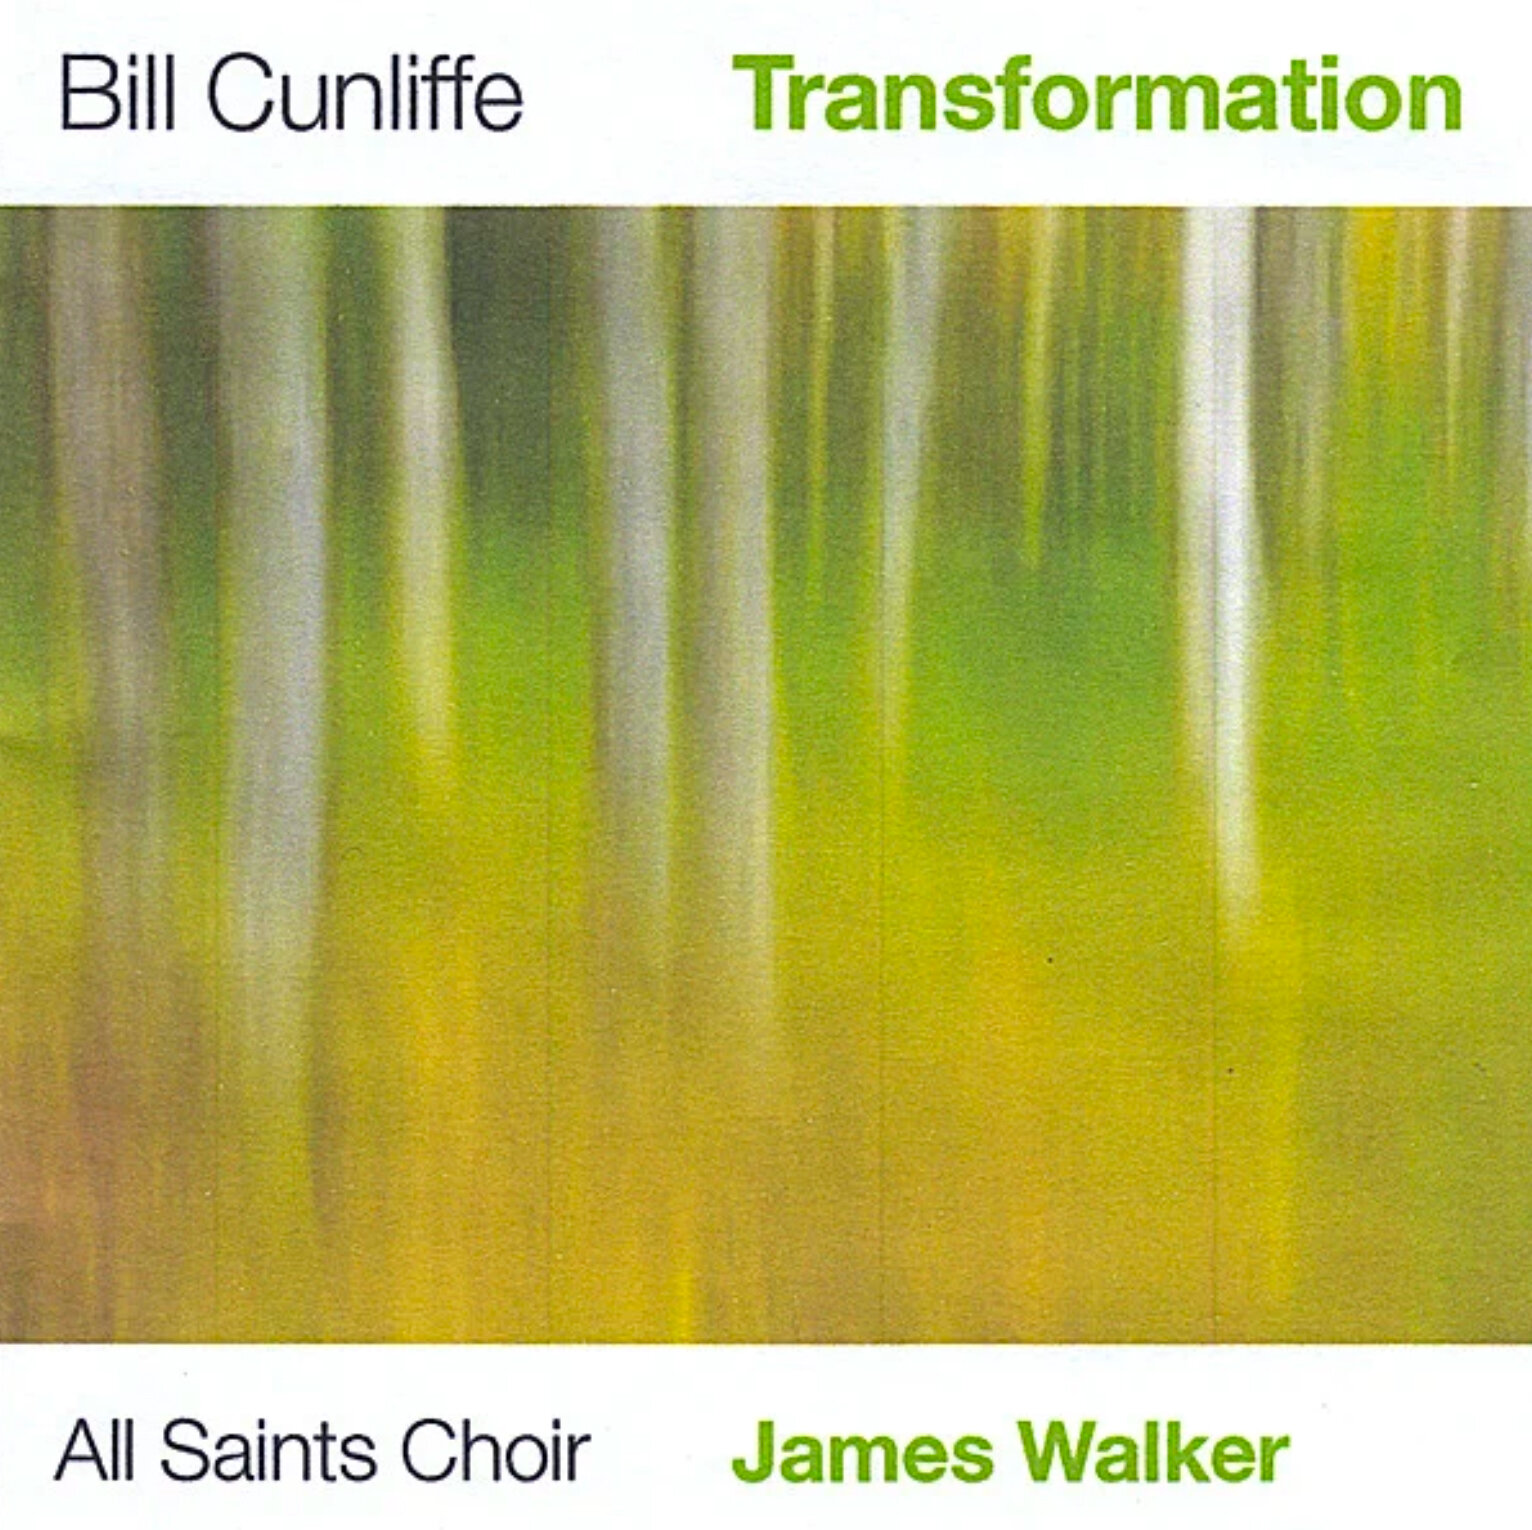 transformation-bill-cunliffe-2008-01.jpg